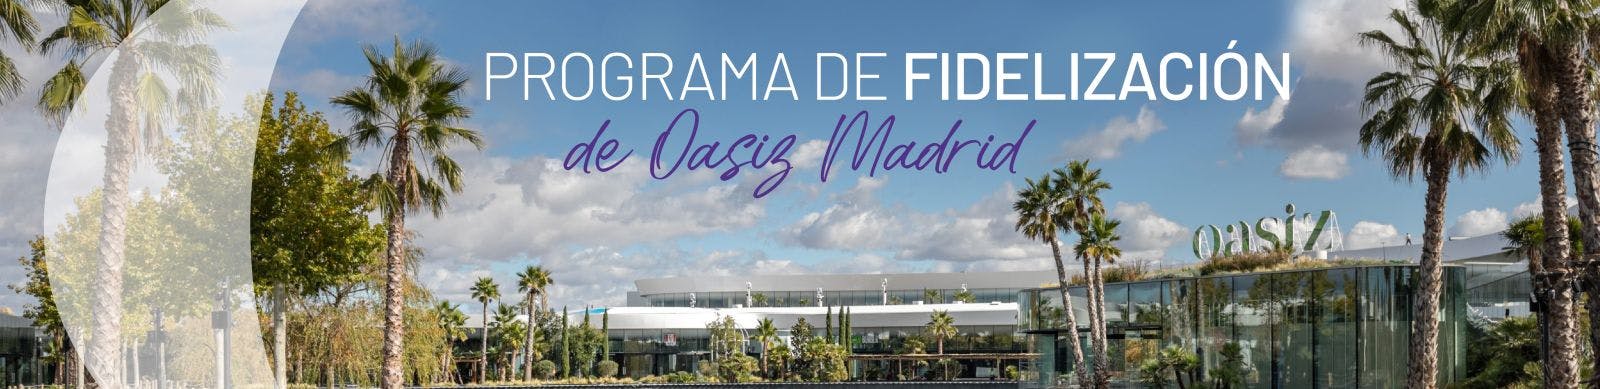 Programa de Fidelización de Oasiz Madrid